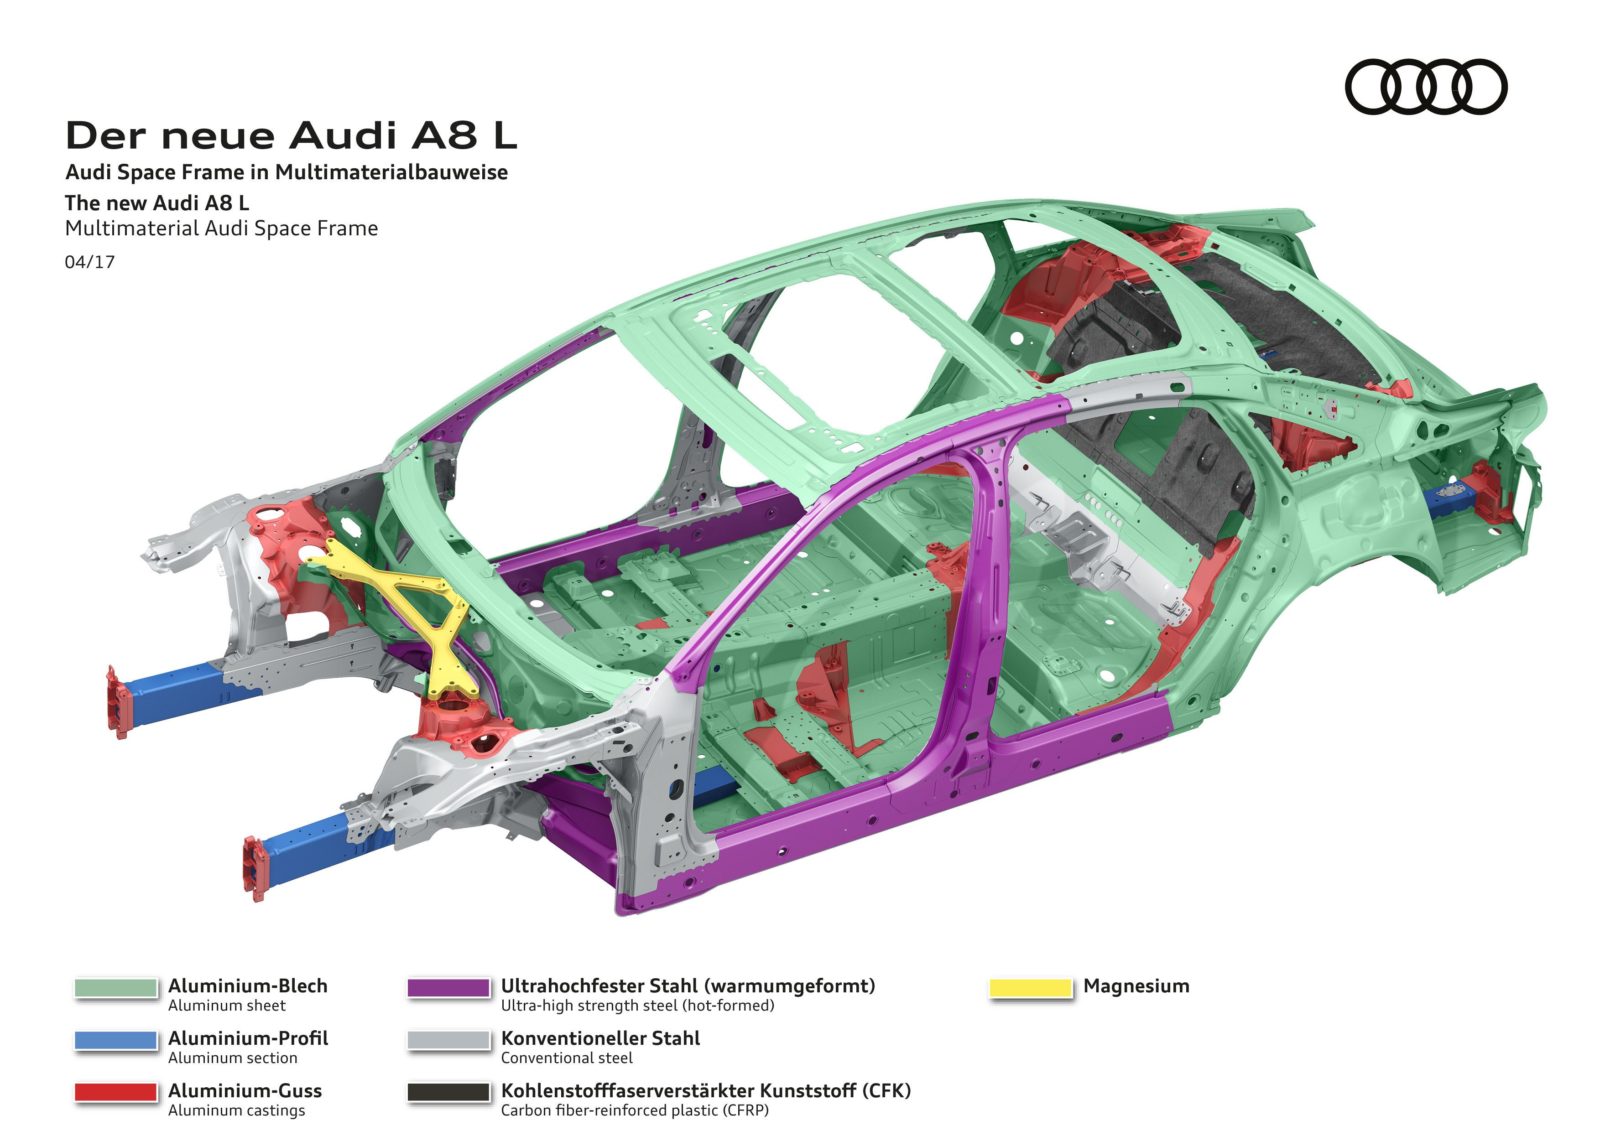 Audi A8: Audi Space Frame